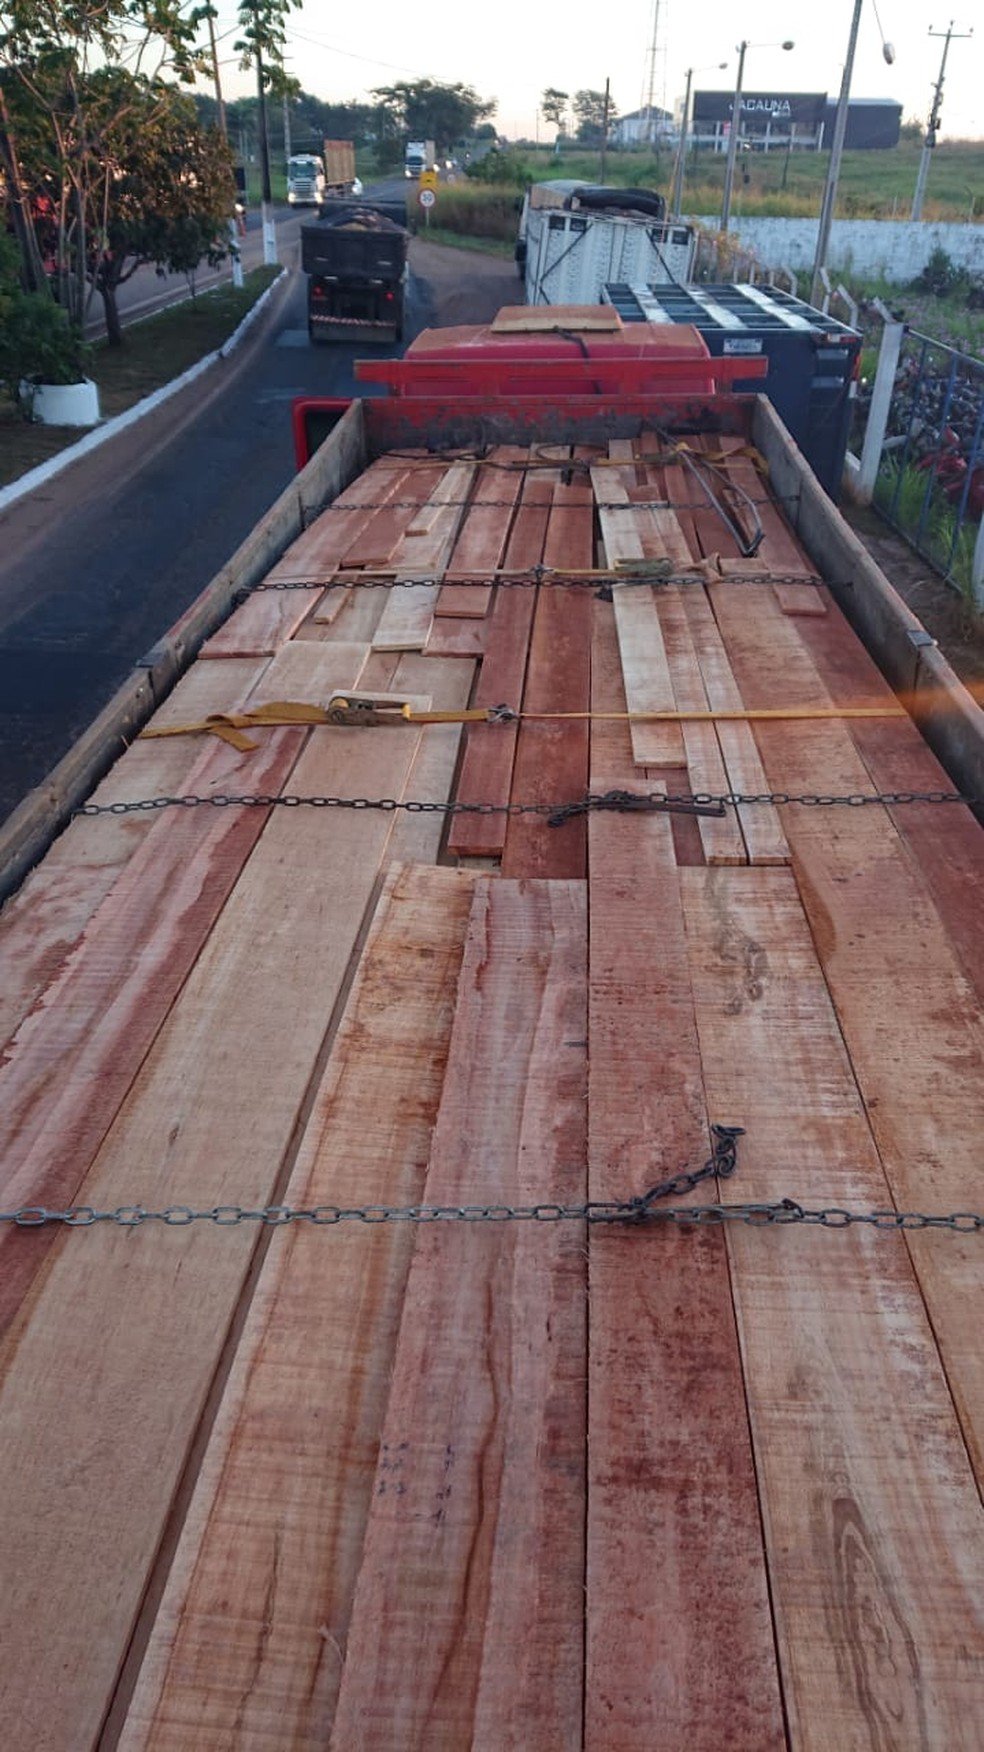 Carregamento de madeira irregular na BR-010 em Imperatriz